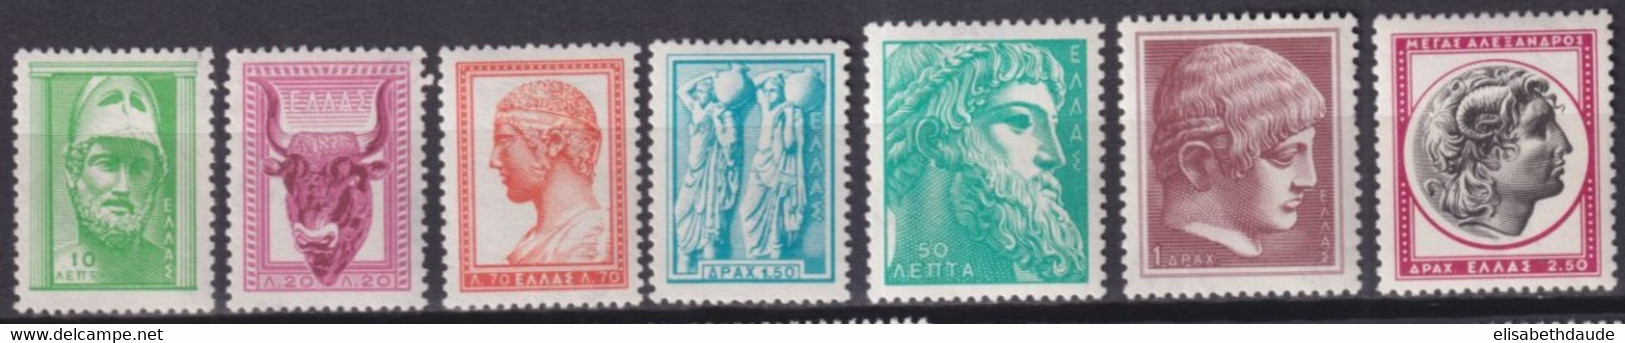 GRECE - 1958 - YVERT N°668/674A ** MNH  - COTE = 45 EUR - Ungebraucht